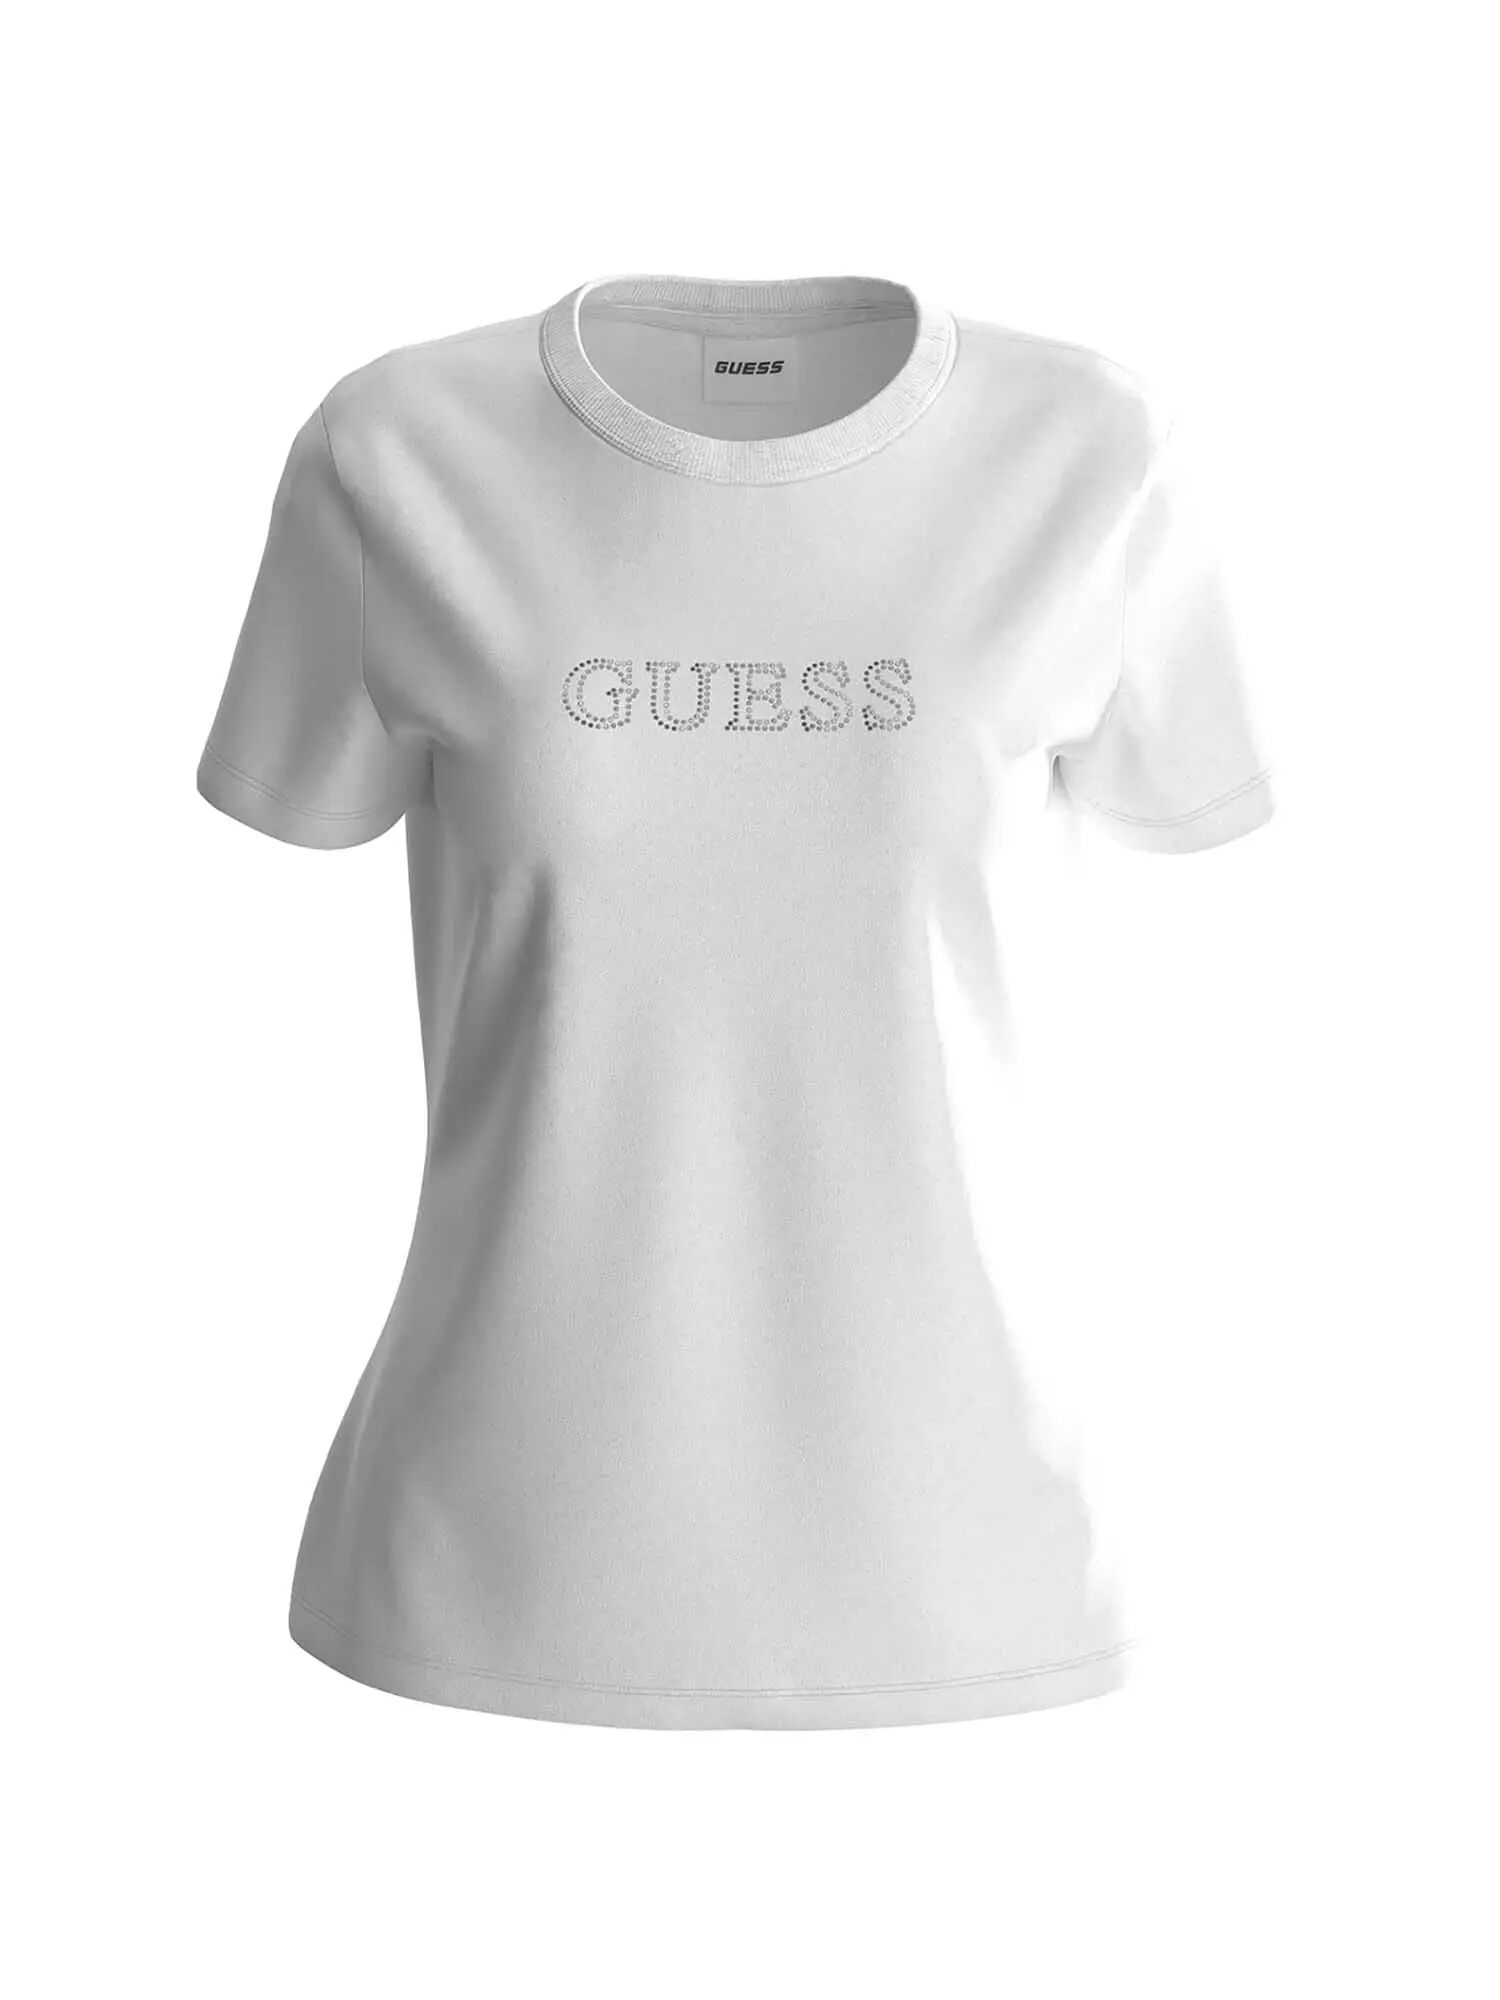 Guess T-shirt Donna Colore Bianco BIANCO XS